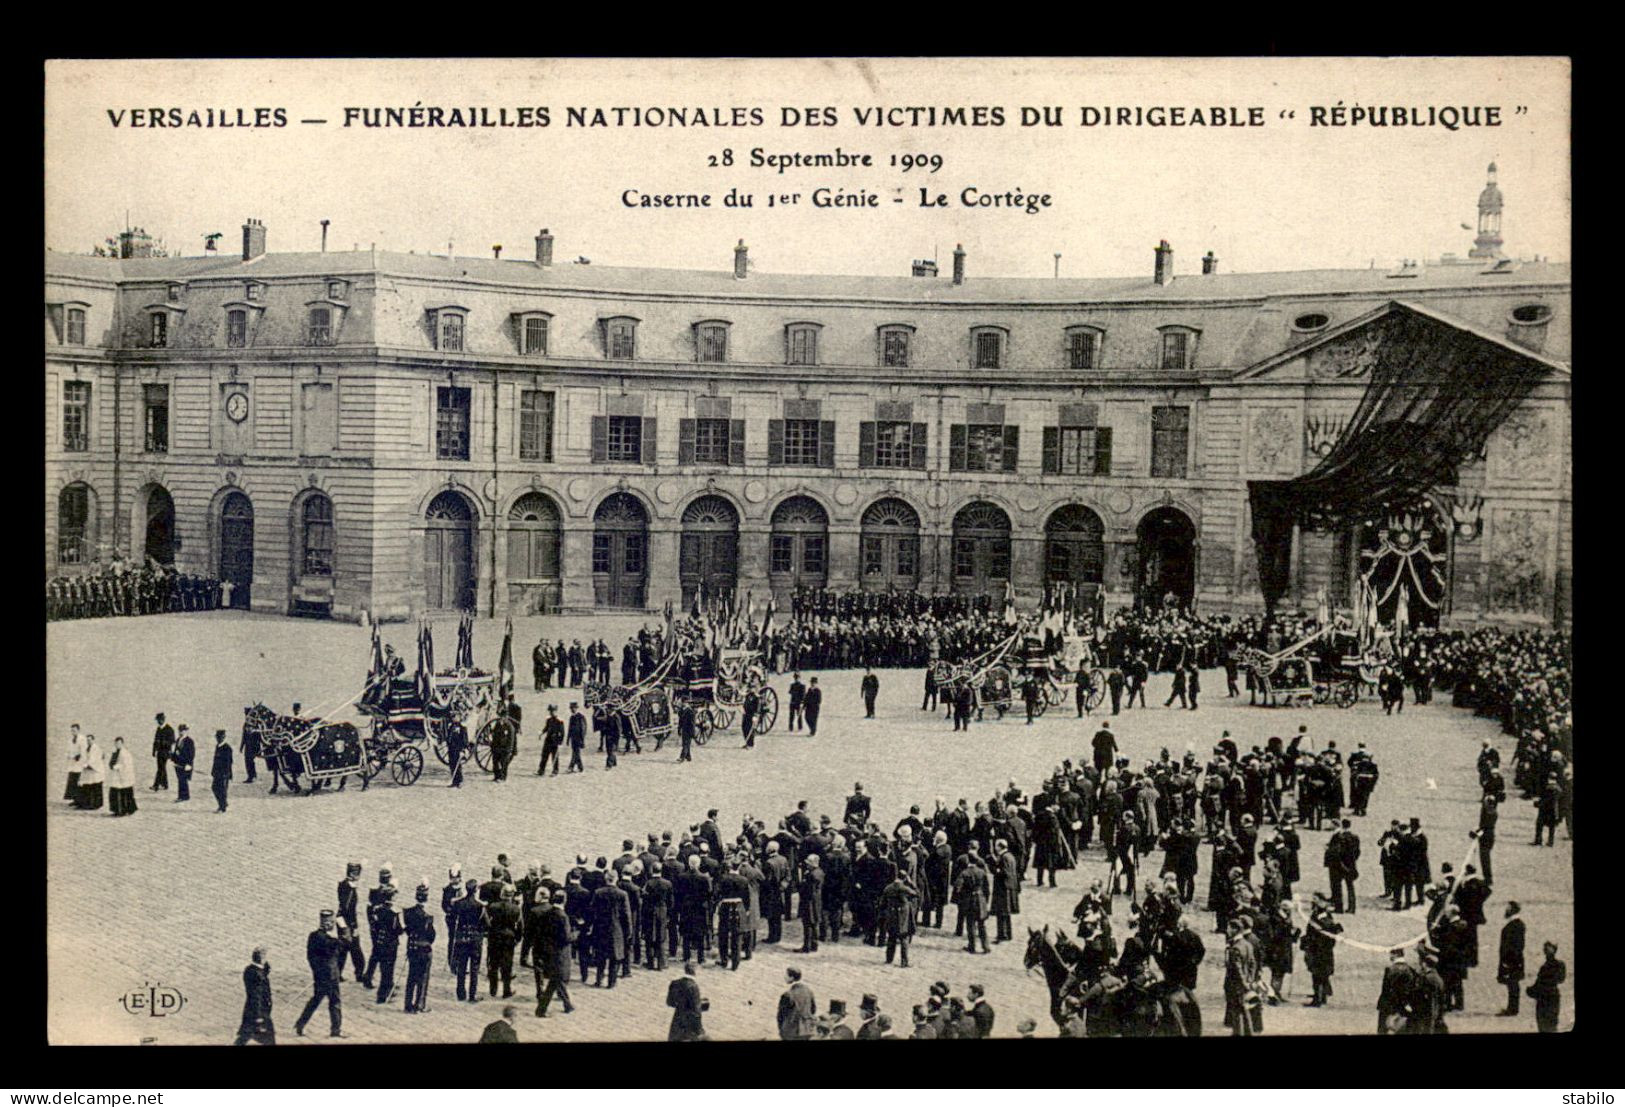 78 - VERSAILLES - FUNERAILLES DES VICTIMES DE LA CATASTROPHE DU DIRIGEABLE LA REPUBLIQUE 28 SEPT 1909 - LE CORTEGE - Versailles